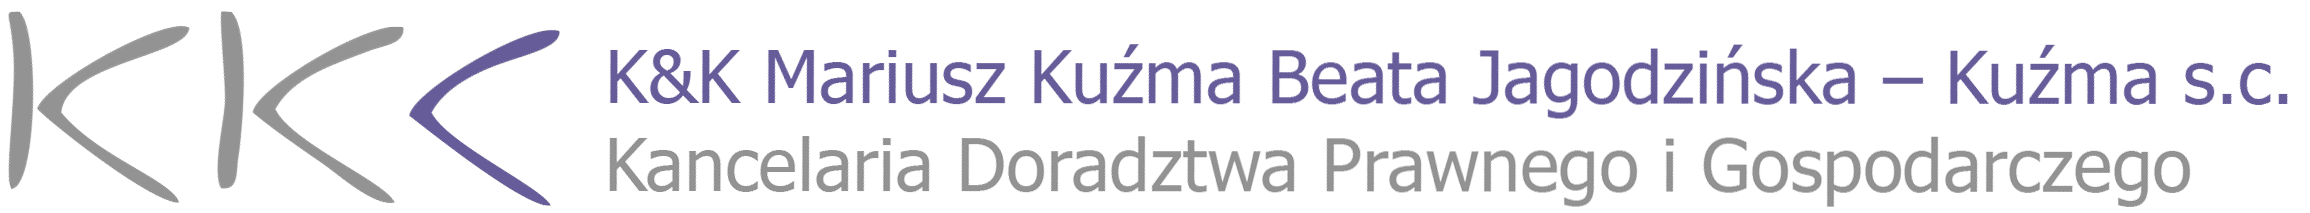 logo kkpz